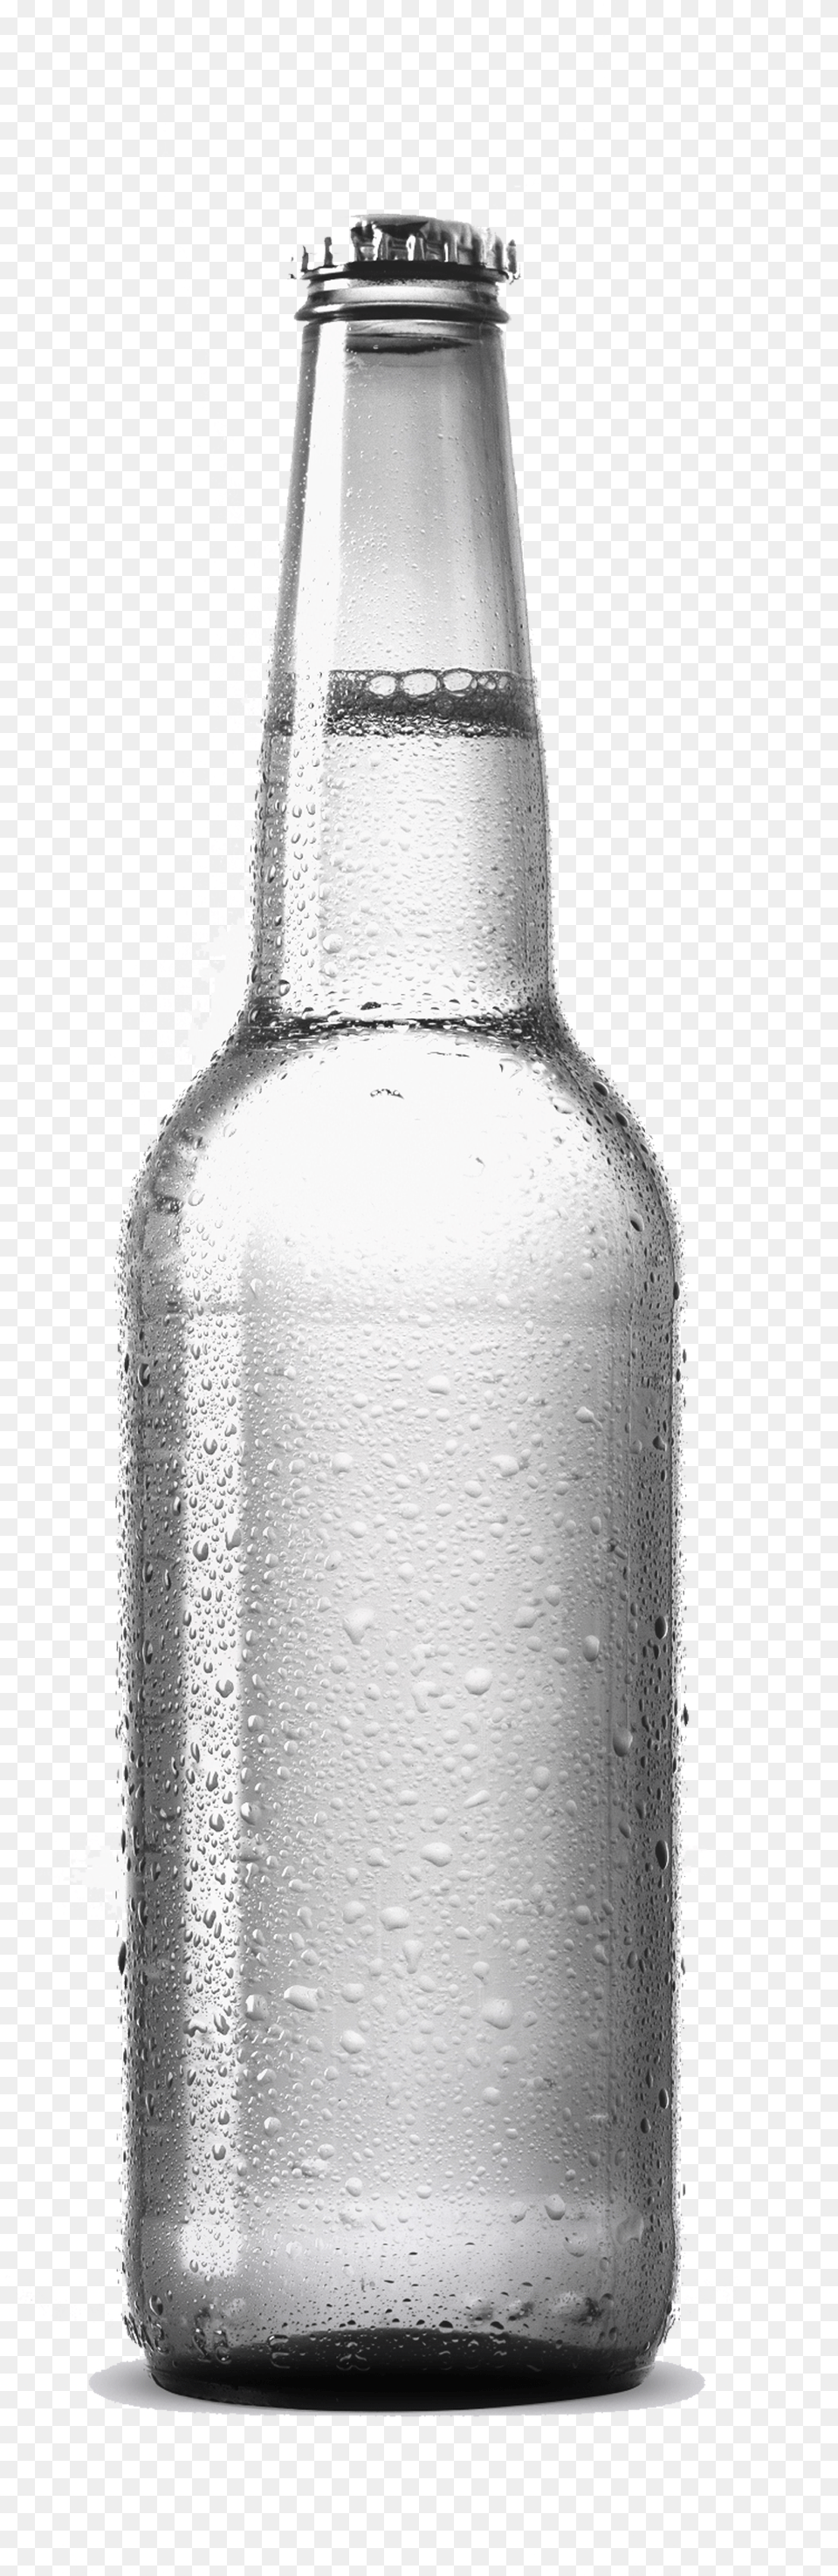 Beer Bottle Mockup Graphic Design Transprent Bottle, Alcohol, Beverage, Beer Bottle, Liquor Free Png Download